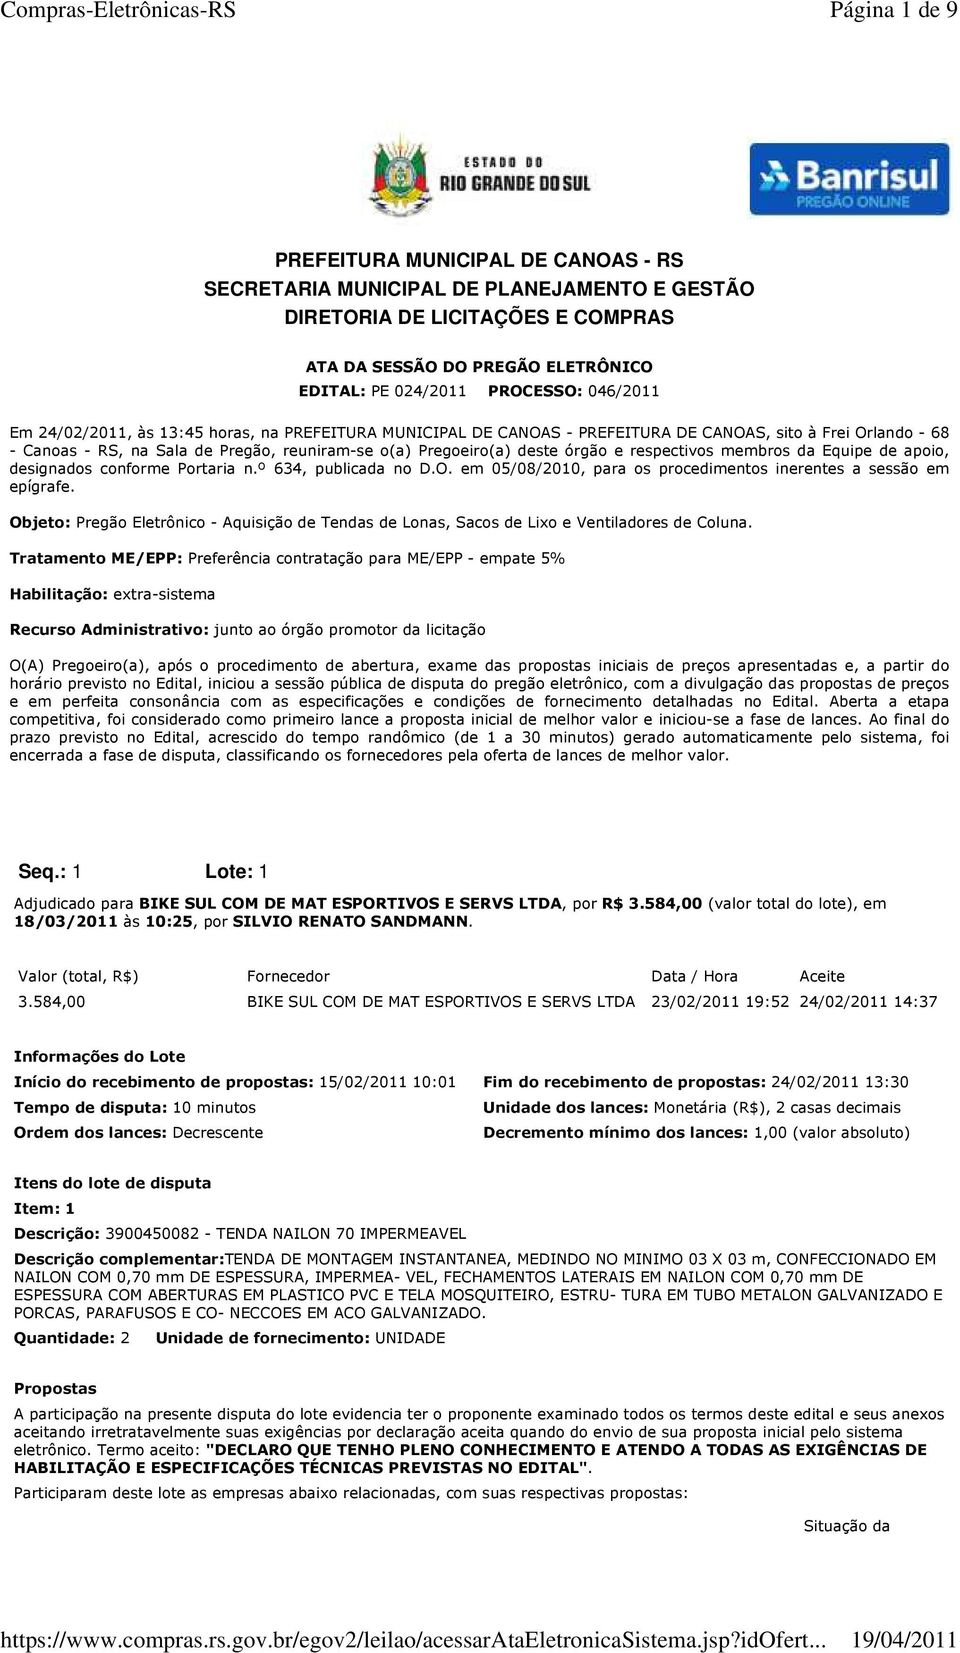 respectivos mbros da Equipe de apoio, designados confor Portaria n.º 634, publicada no D.O. em 05/08/2010, para os procedintos inerentes a sessão em epígrafe.